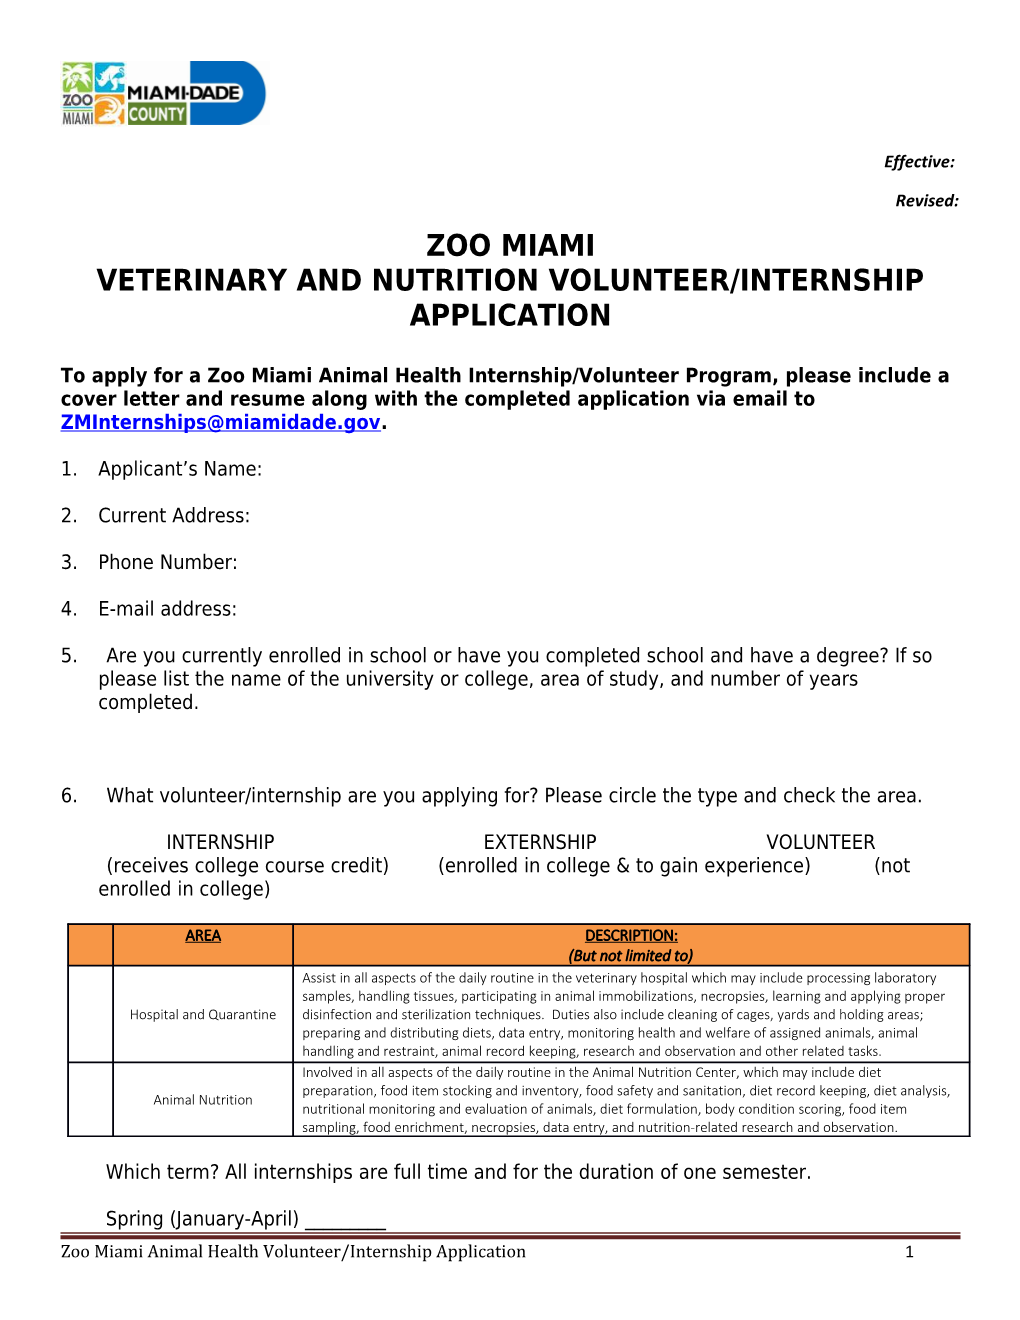 Veterinary and Nutritionvolunteer/Internship Application